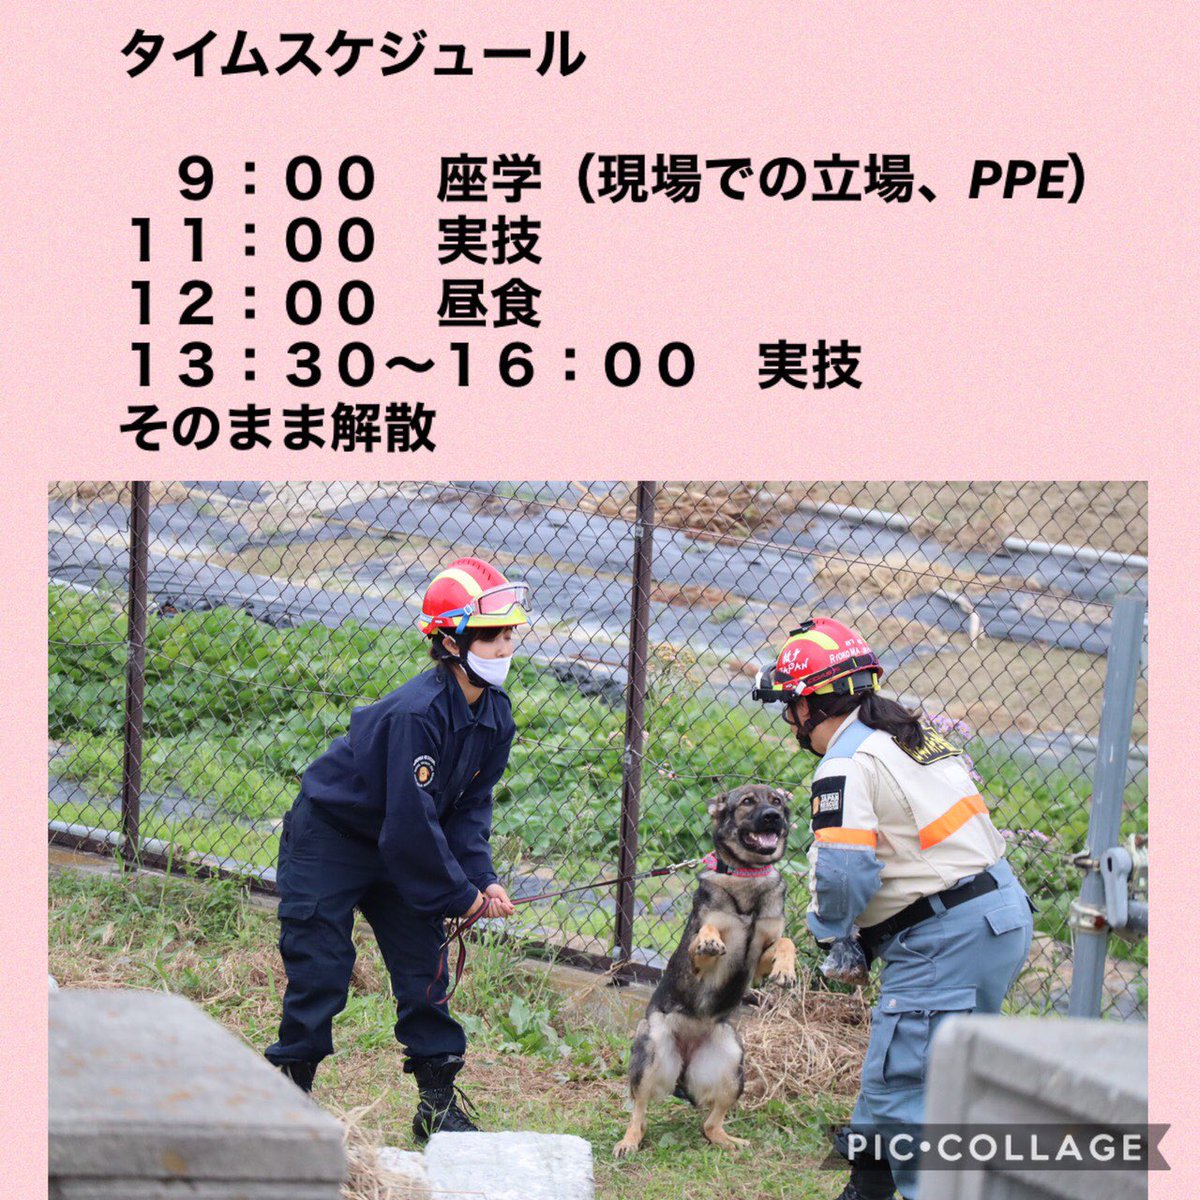 認定npo法人 日本レスキュー協会 على تويتر 災害救助犬事業 2021年1月より 新 プログラム 救助犬1dayセミナー が始まります おうちで飼っているわんちゃんと救助犬のトレーニングを体験してみませんか 皆様のご予約をお待ちしております